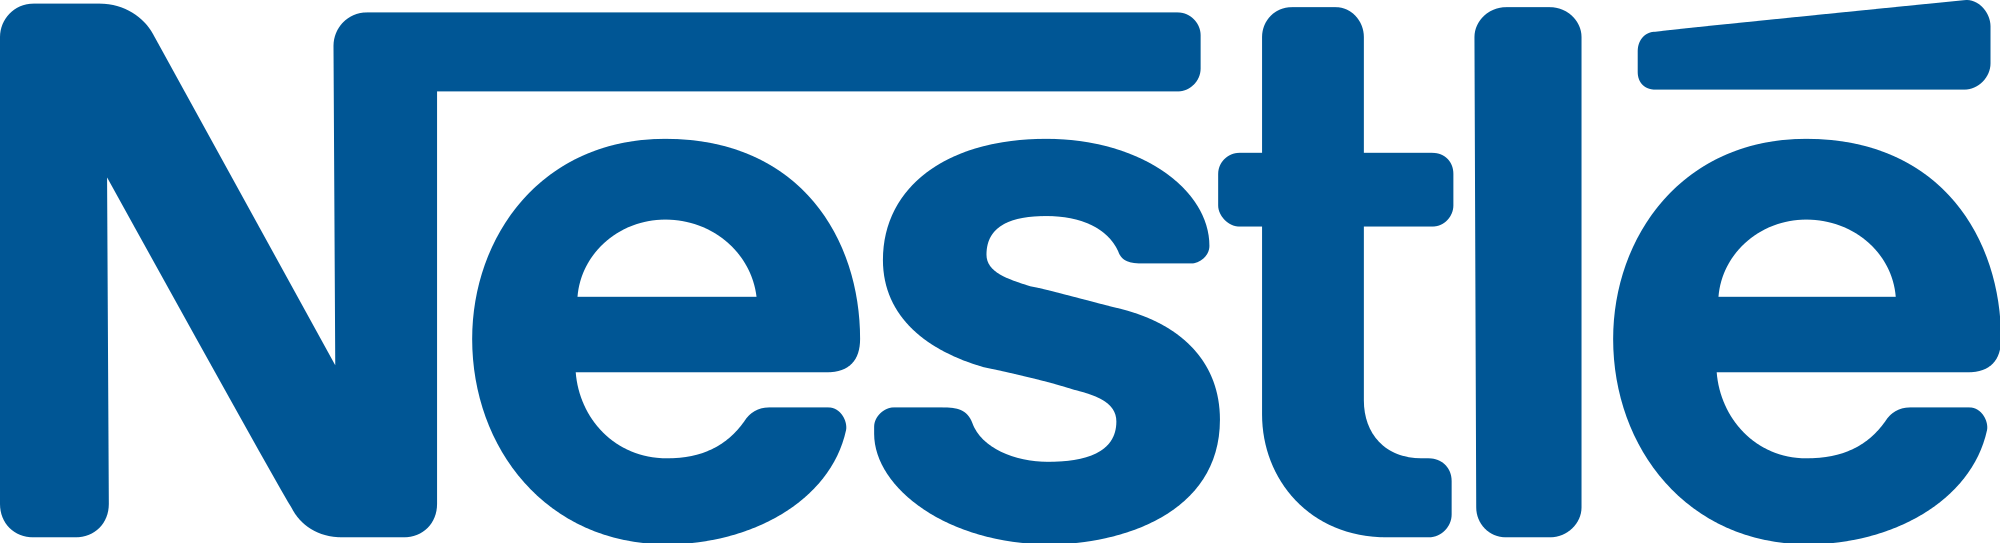 Nestle Logo PNG Photo Image